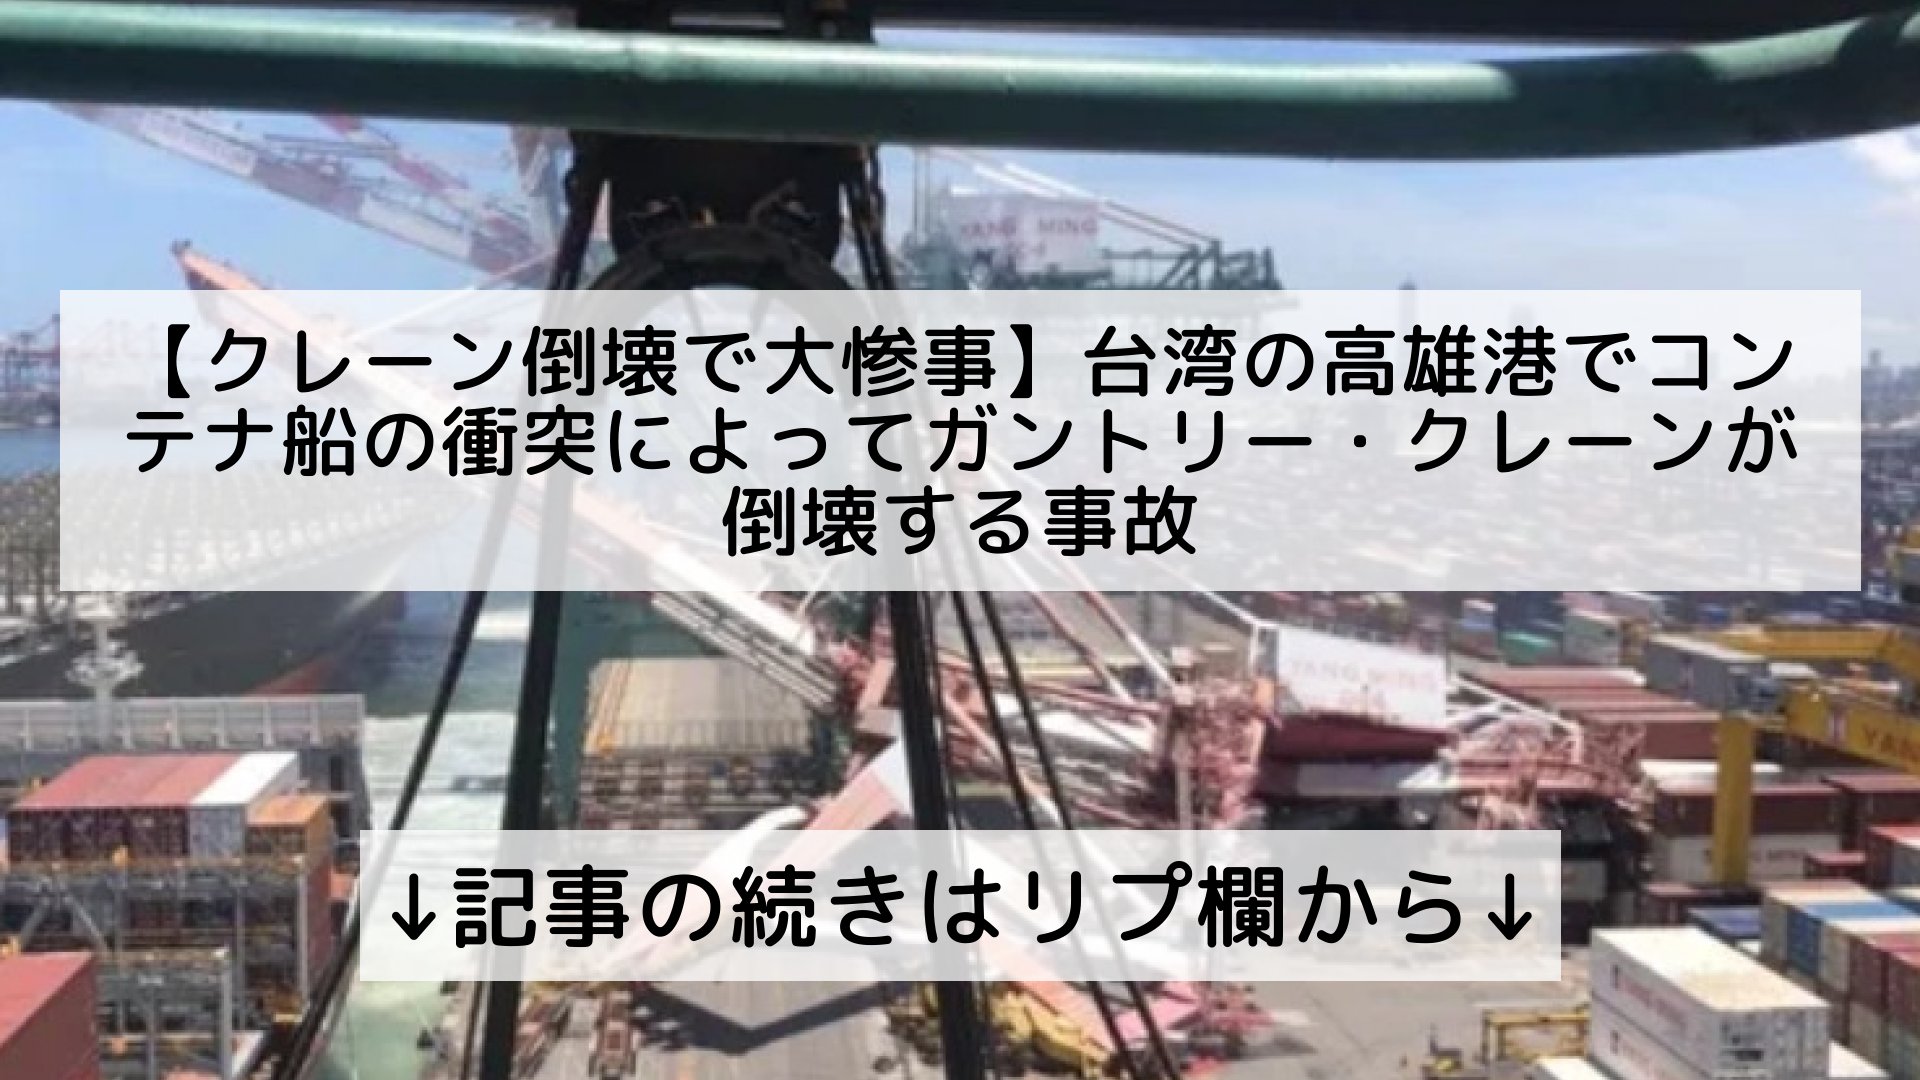 話題のニュースまとめ フォロバ100 クレーン倒壊で大惨事 台湾の高雄港でコンテナ船の衝突によってガントリー クレーンが倒壊する事故 記事の続きはリプ欄から T Co Tmlbgt285z Twitter